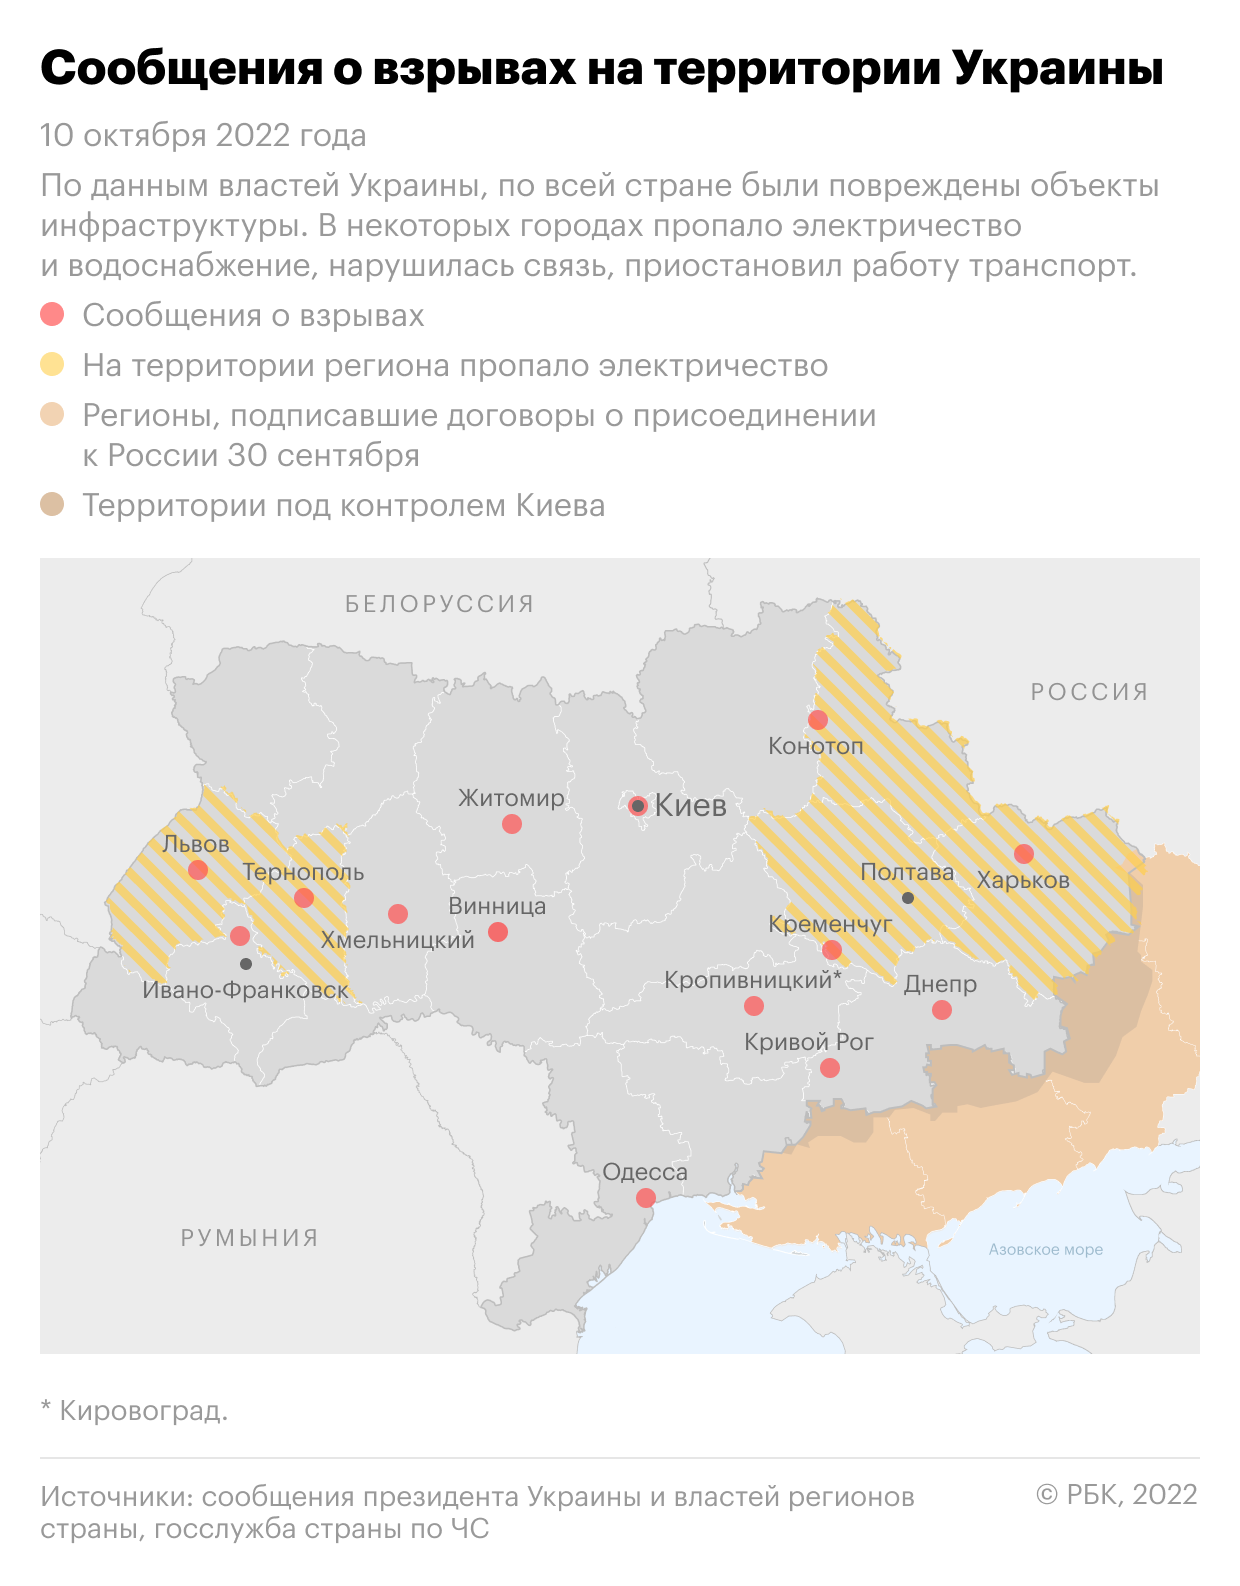 Взрывы в городах Украины. Главное"/>













